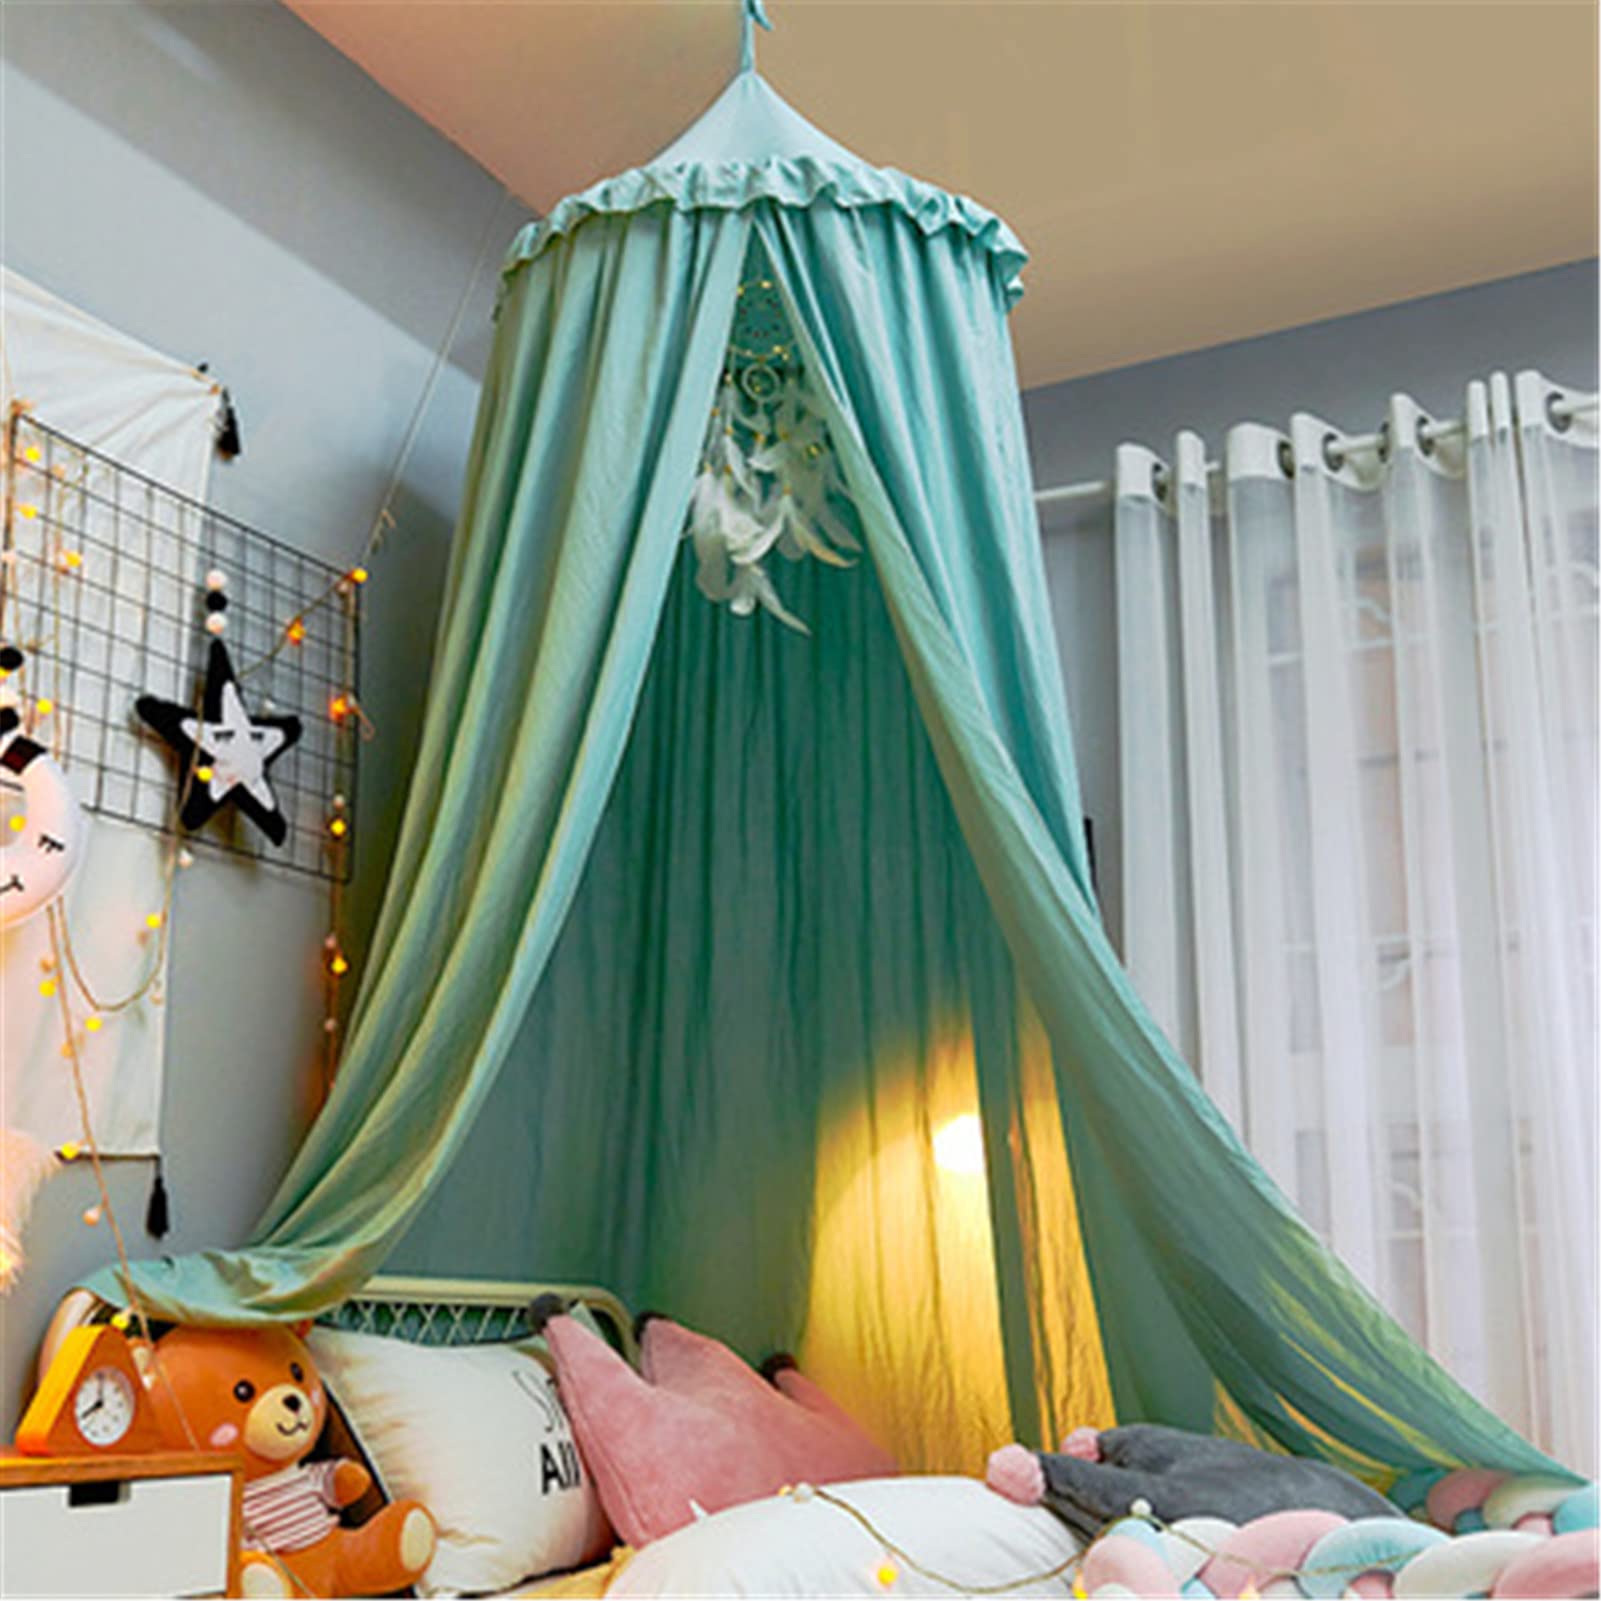 Betthimmel Babybett, Kinder Moskitonetz Baldachin, Moskitonetz Bett Vorhang, Prinzessin Bettvorhang für Bett und Schlafzimmer (Grün B)